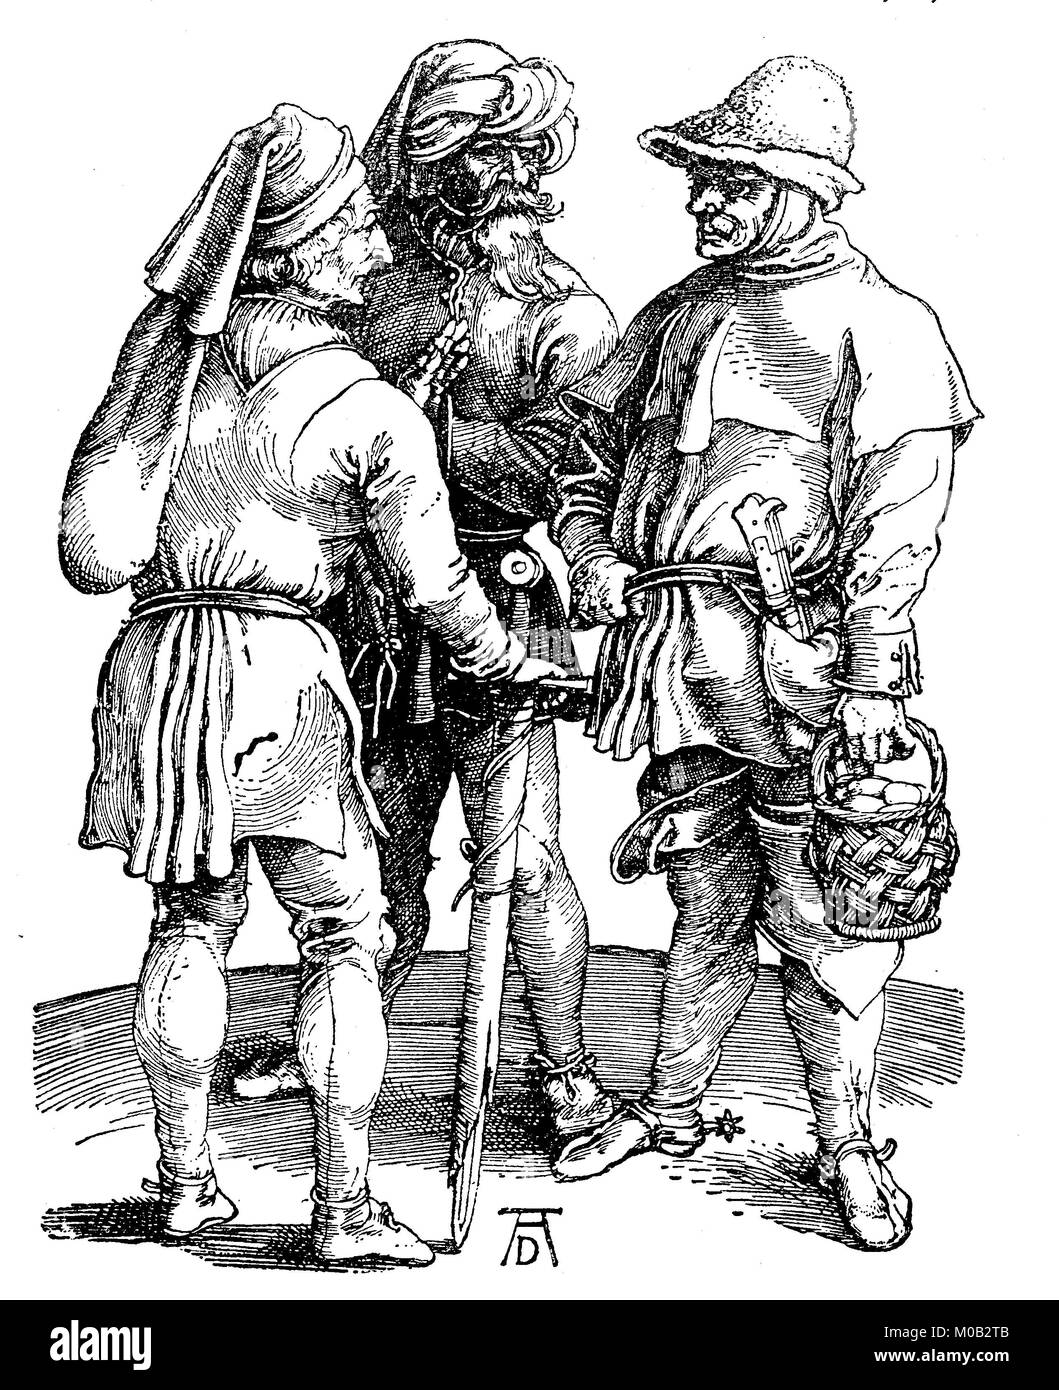 Illustrazione di tre contadini a partire dall'inizio del XVI secolo, disegnato e inciso da Albrecht Dürer, digitale migliorata la riproduzione di un originale di stampa dal 1880 Foto Stock